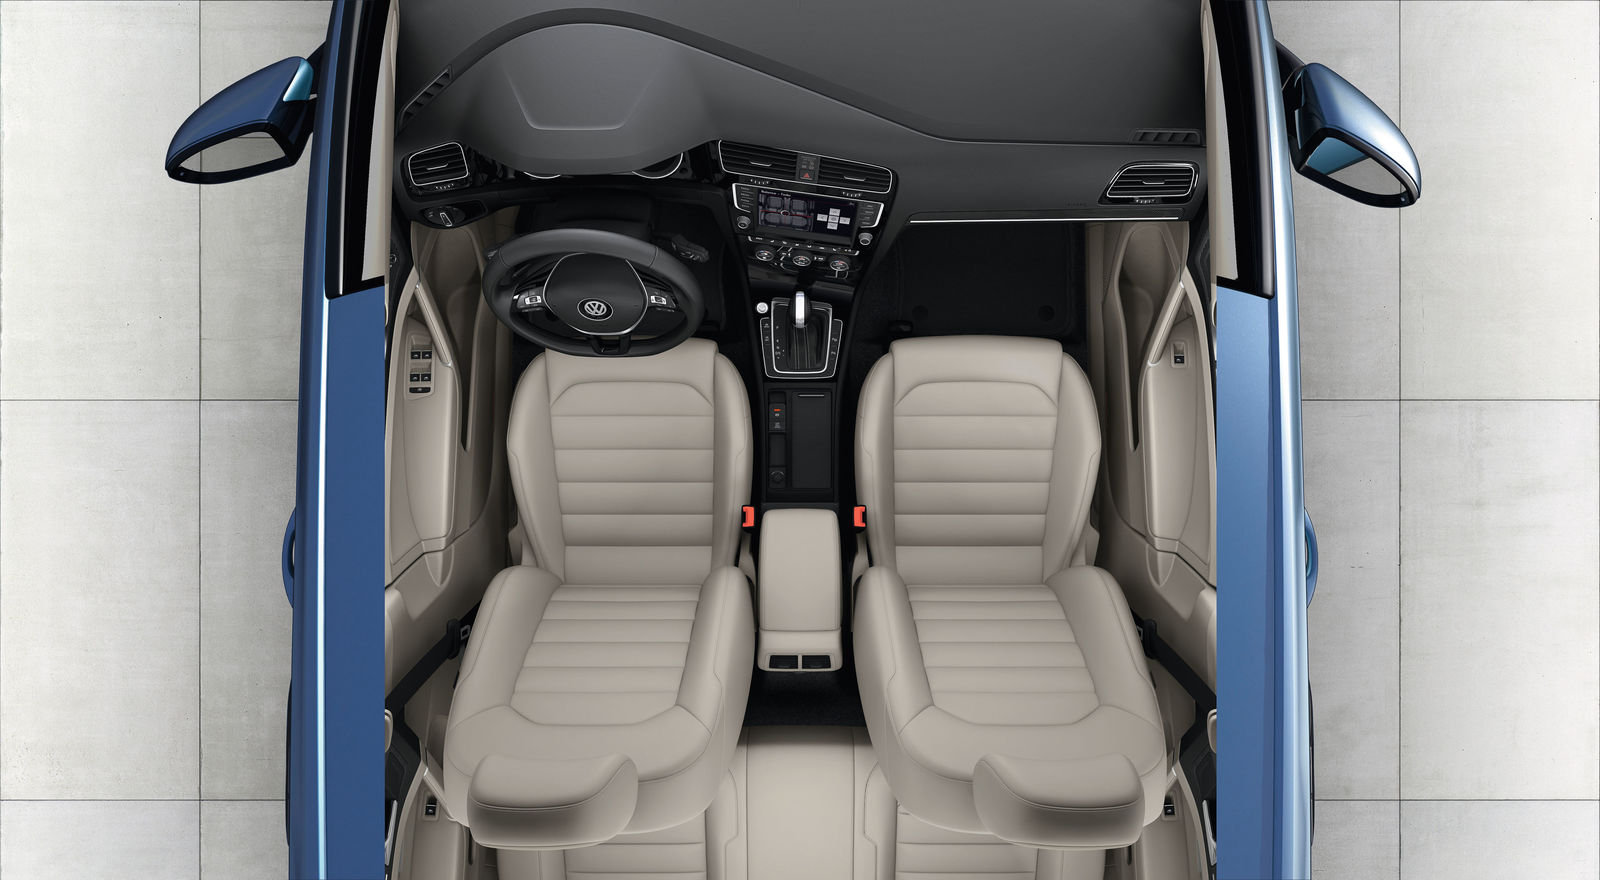 Golf GTD - Interior – ergonomics and configuration